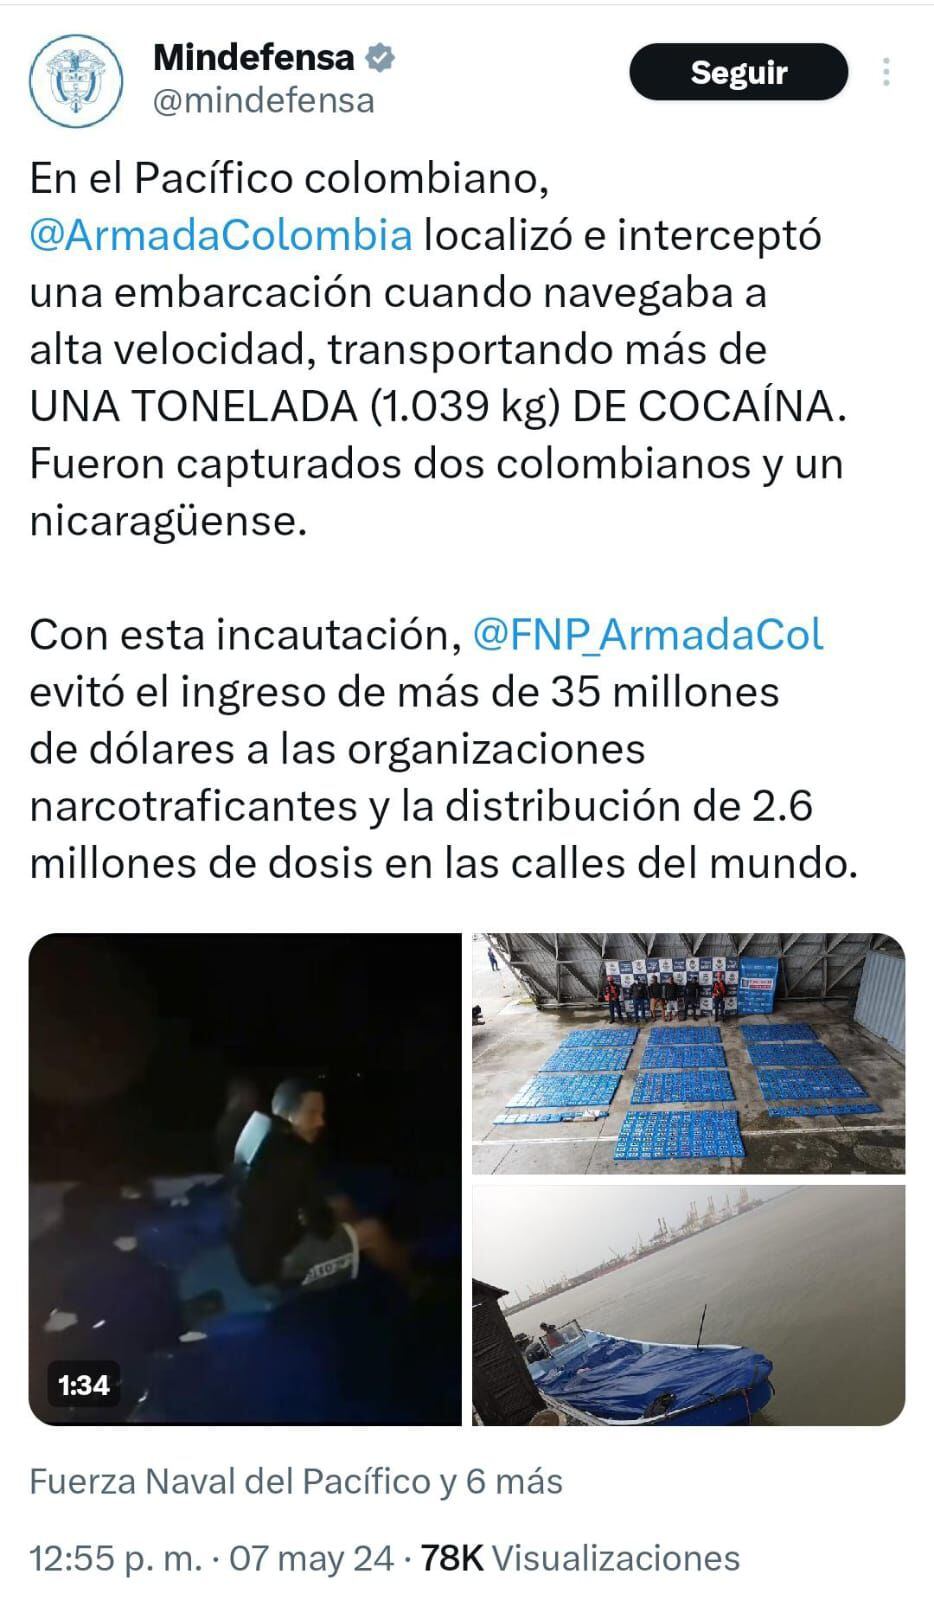 La incautación fue oficializada por el Ministerio de Defensa de Colombia.